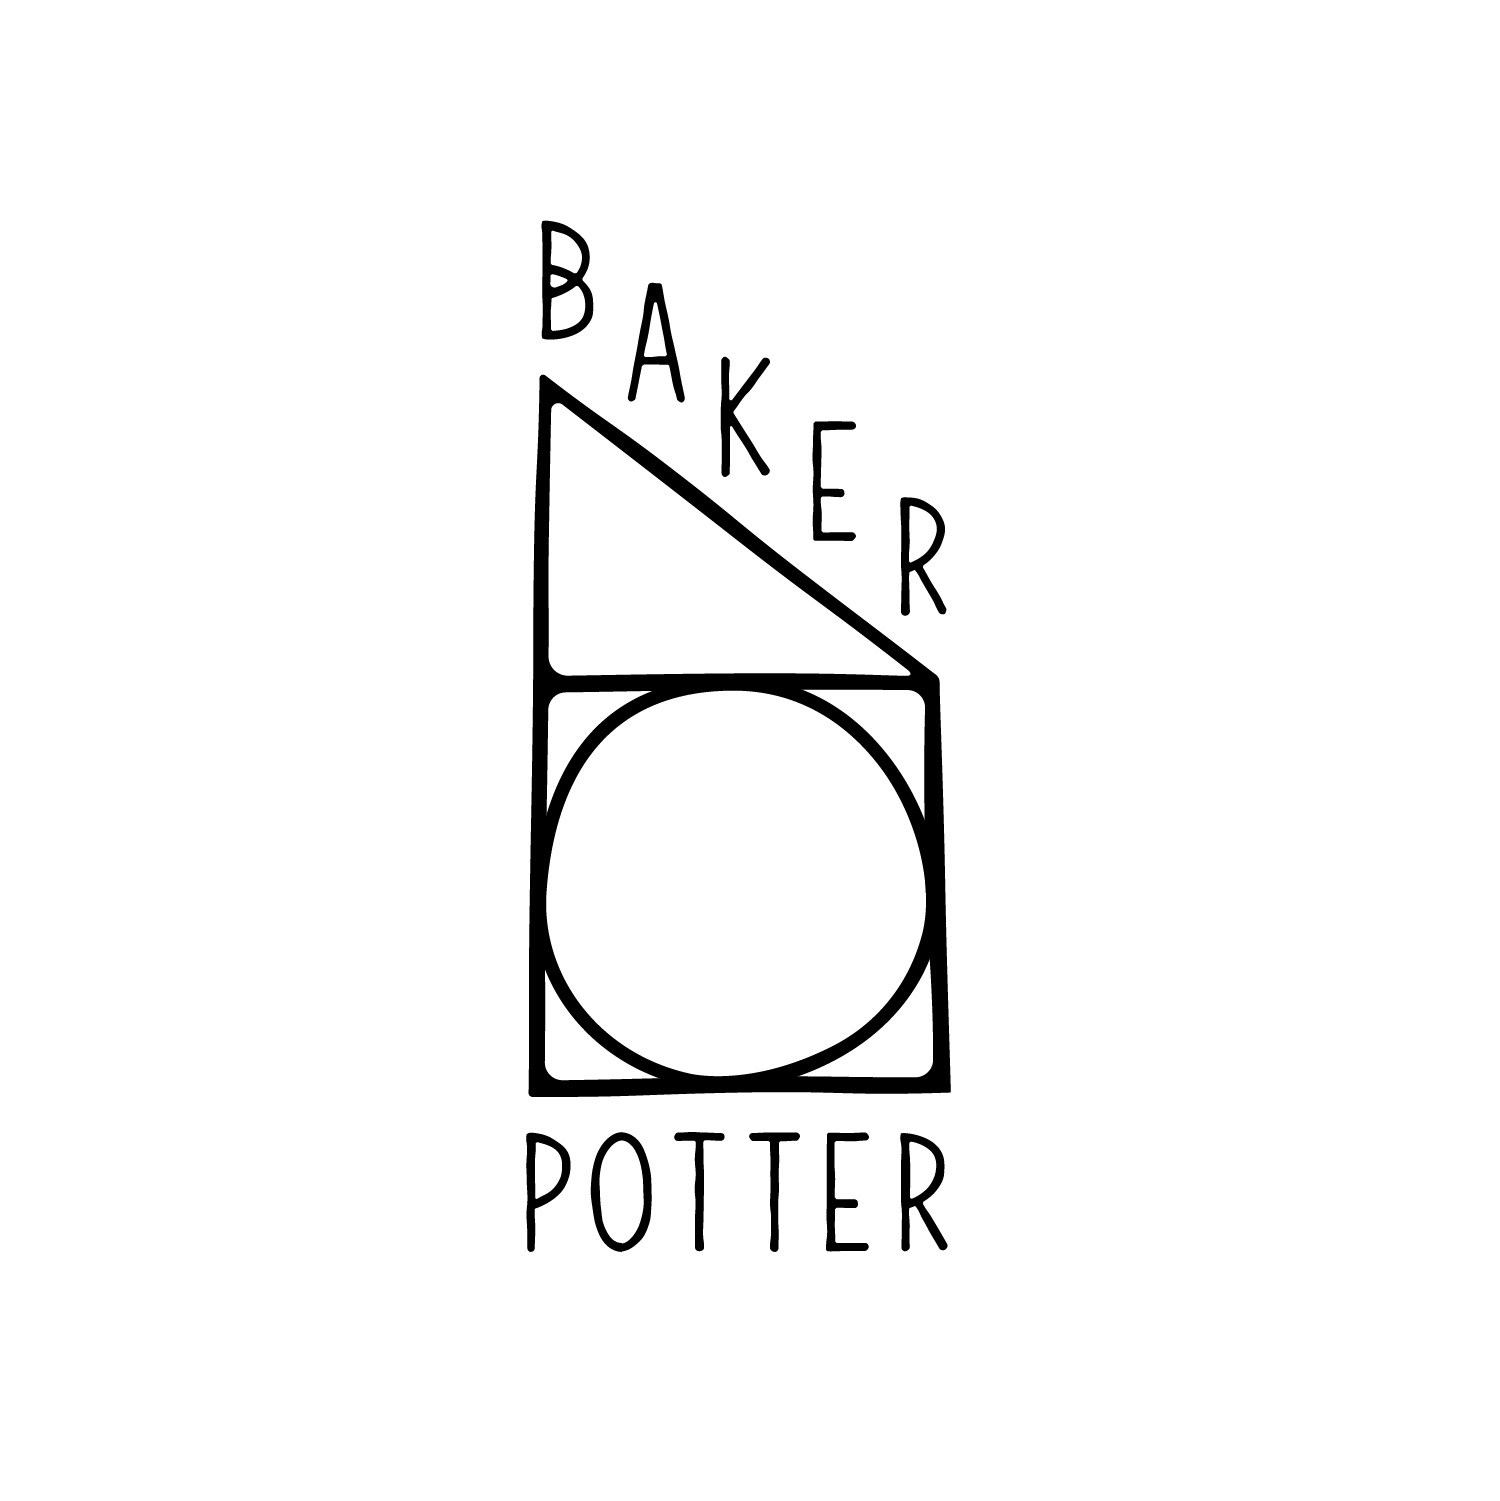 Baker/Potter